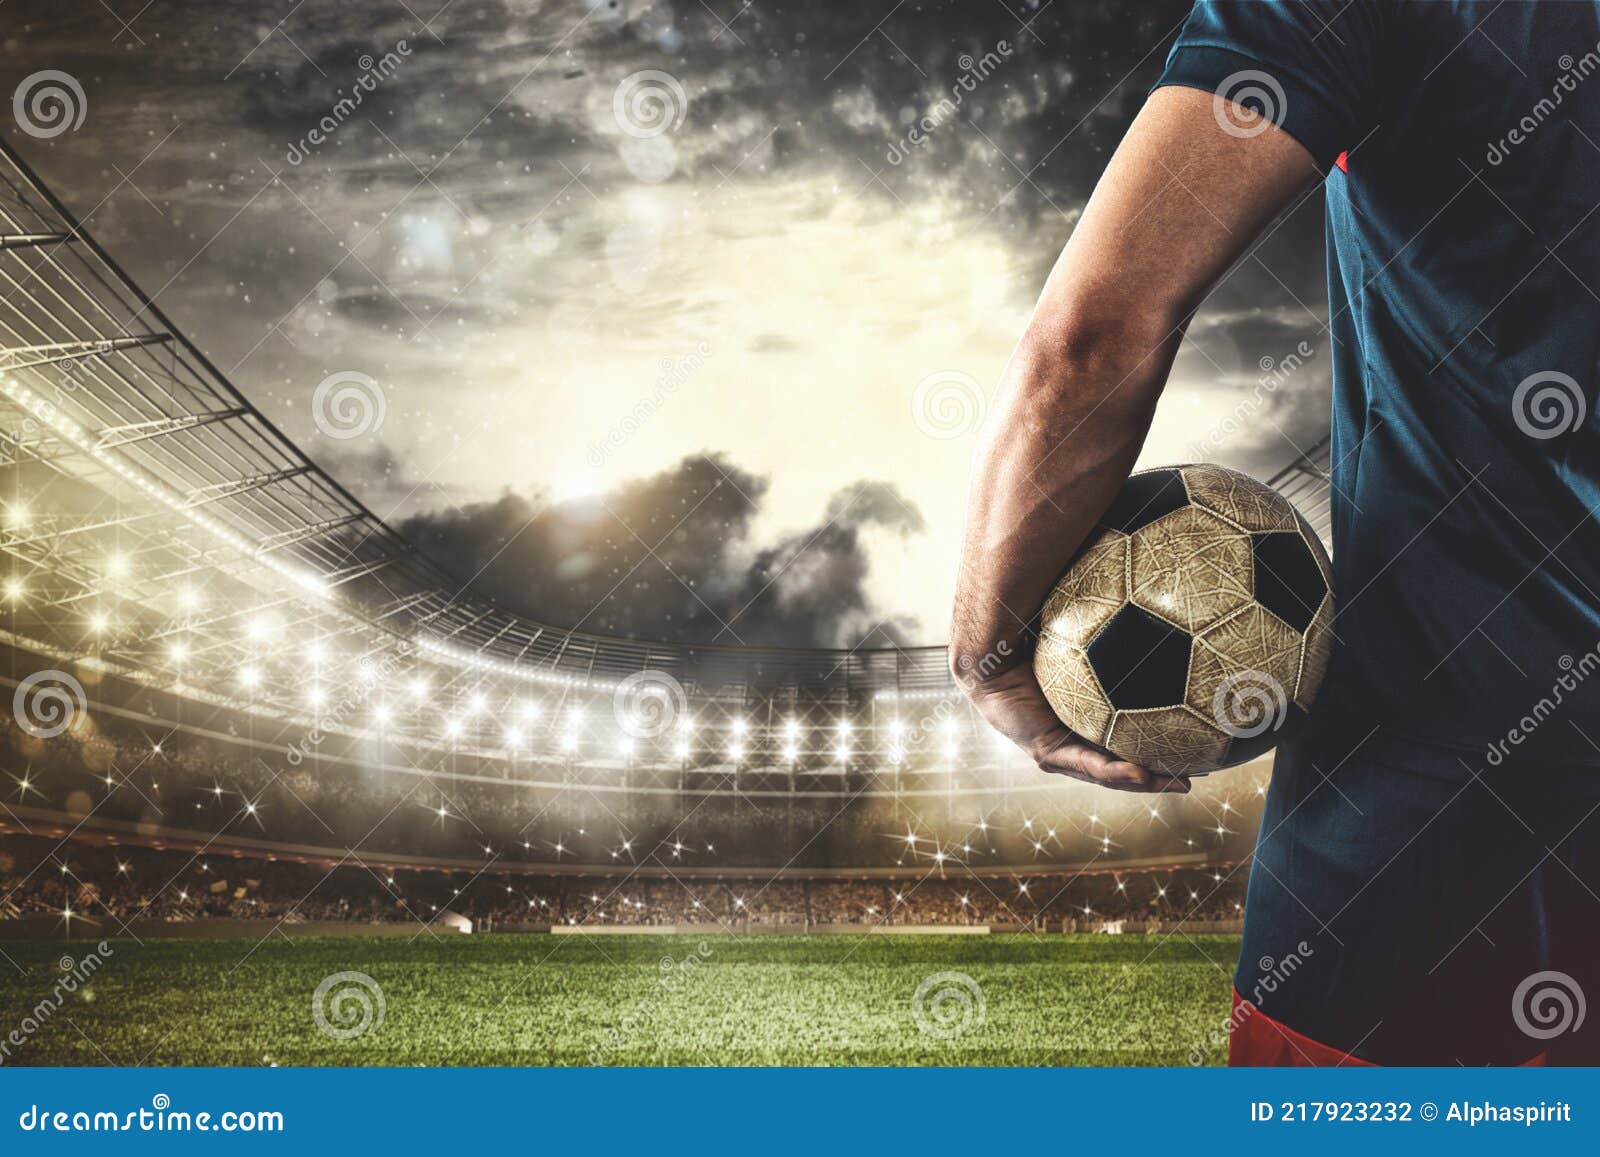 Imagem gratuita: Campeonato, jogador de futebol, futebol, bola de futebol,  jogo, jogador, concorrência, bola, futebol, jogo